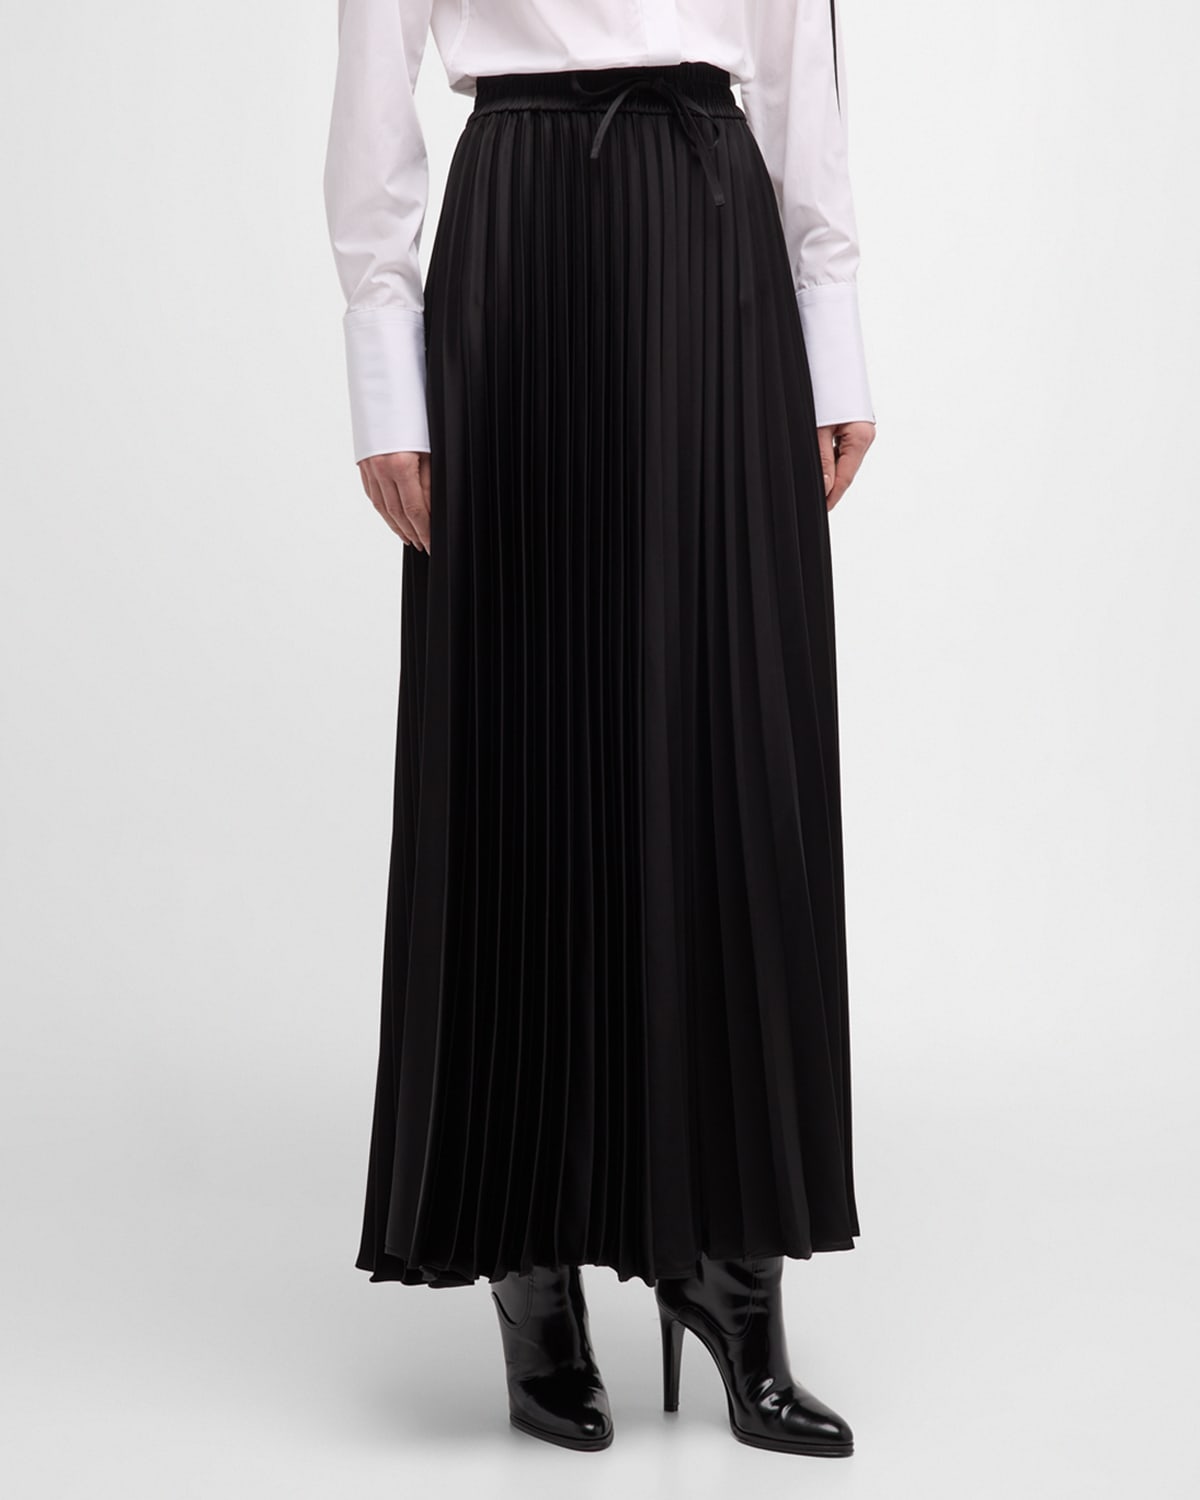 Peter Do Side-stripe Pleated Skirt In Black